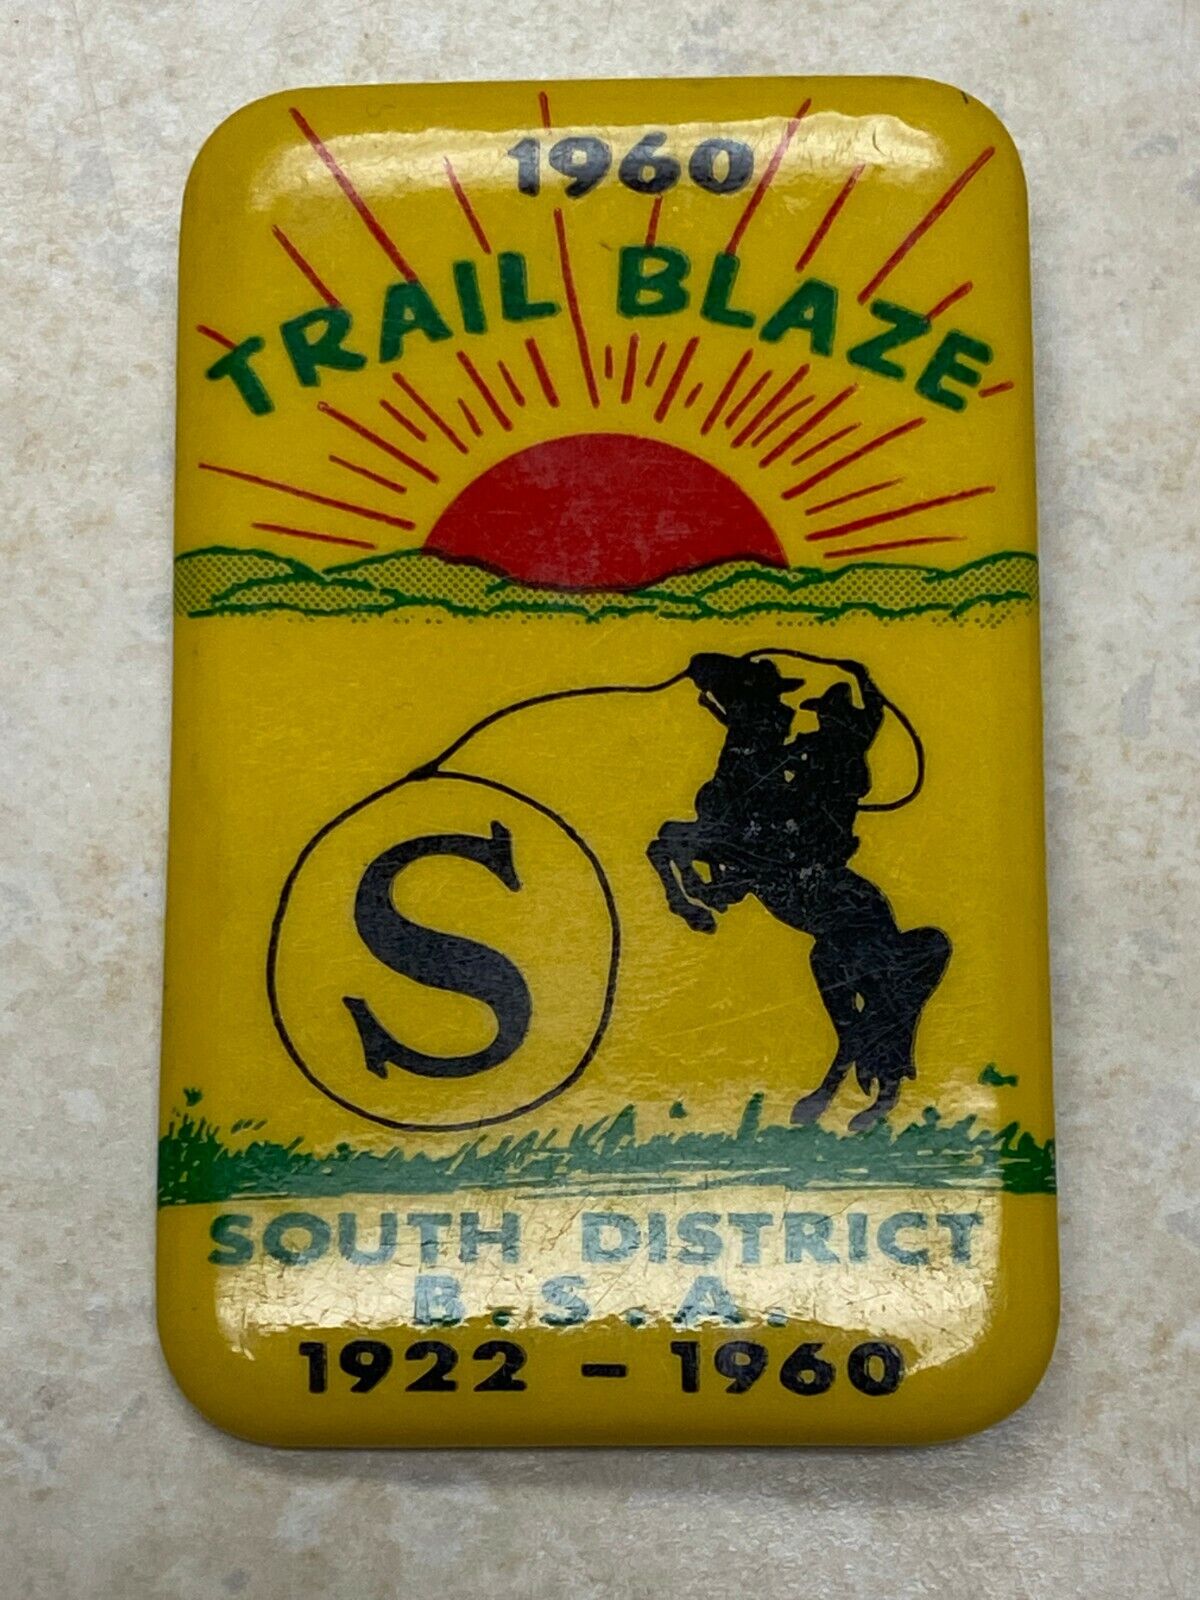 1960 South District Trail Blaze Button - St. Louis